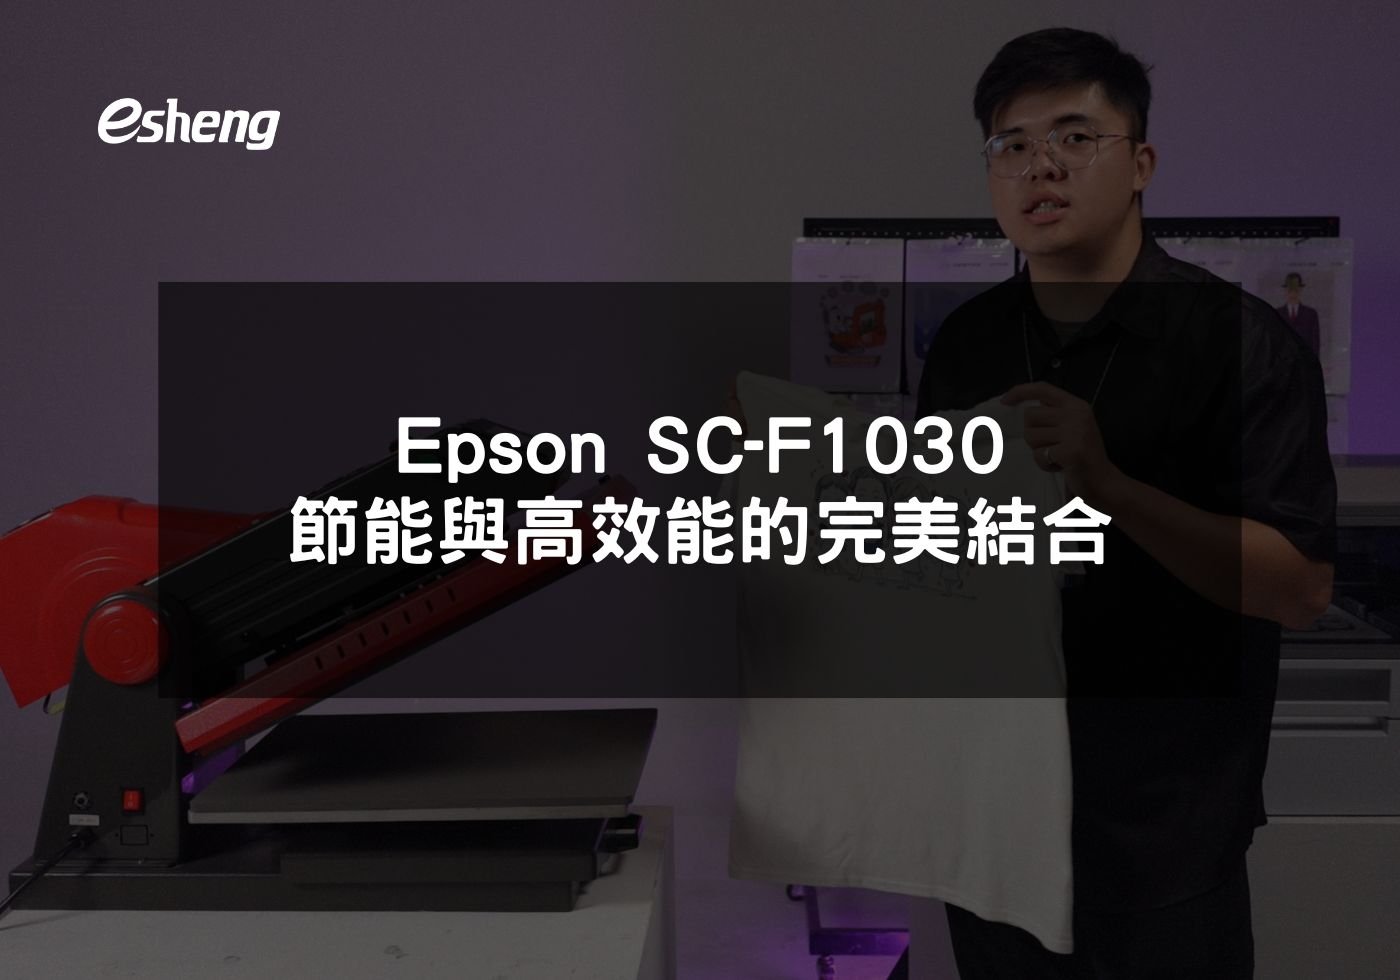 閱讀更多文章 Epson SC-F1030 節能與高效能的完美結合